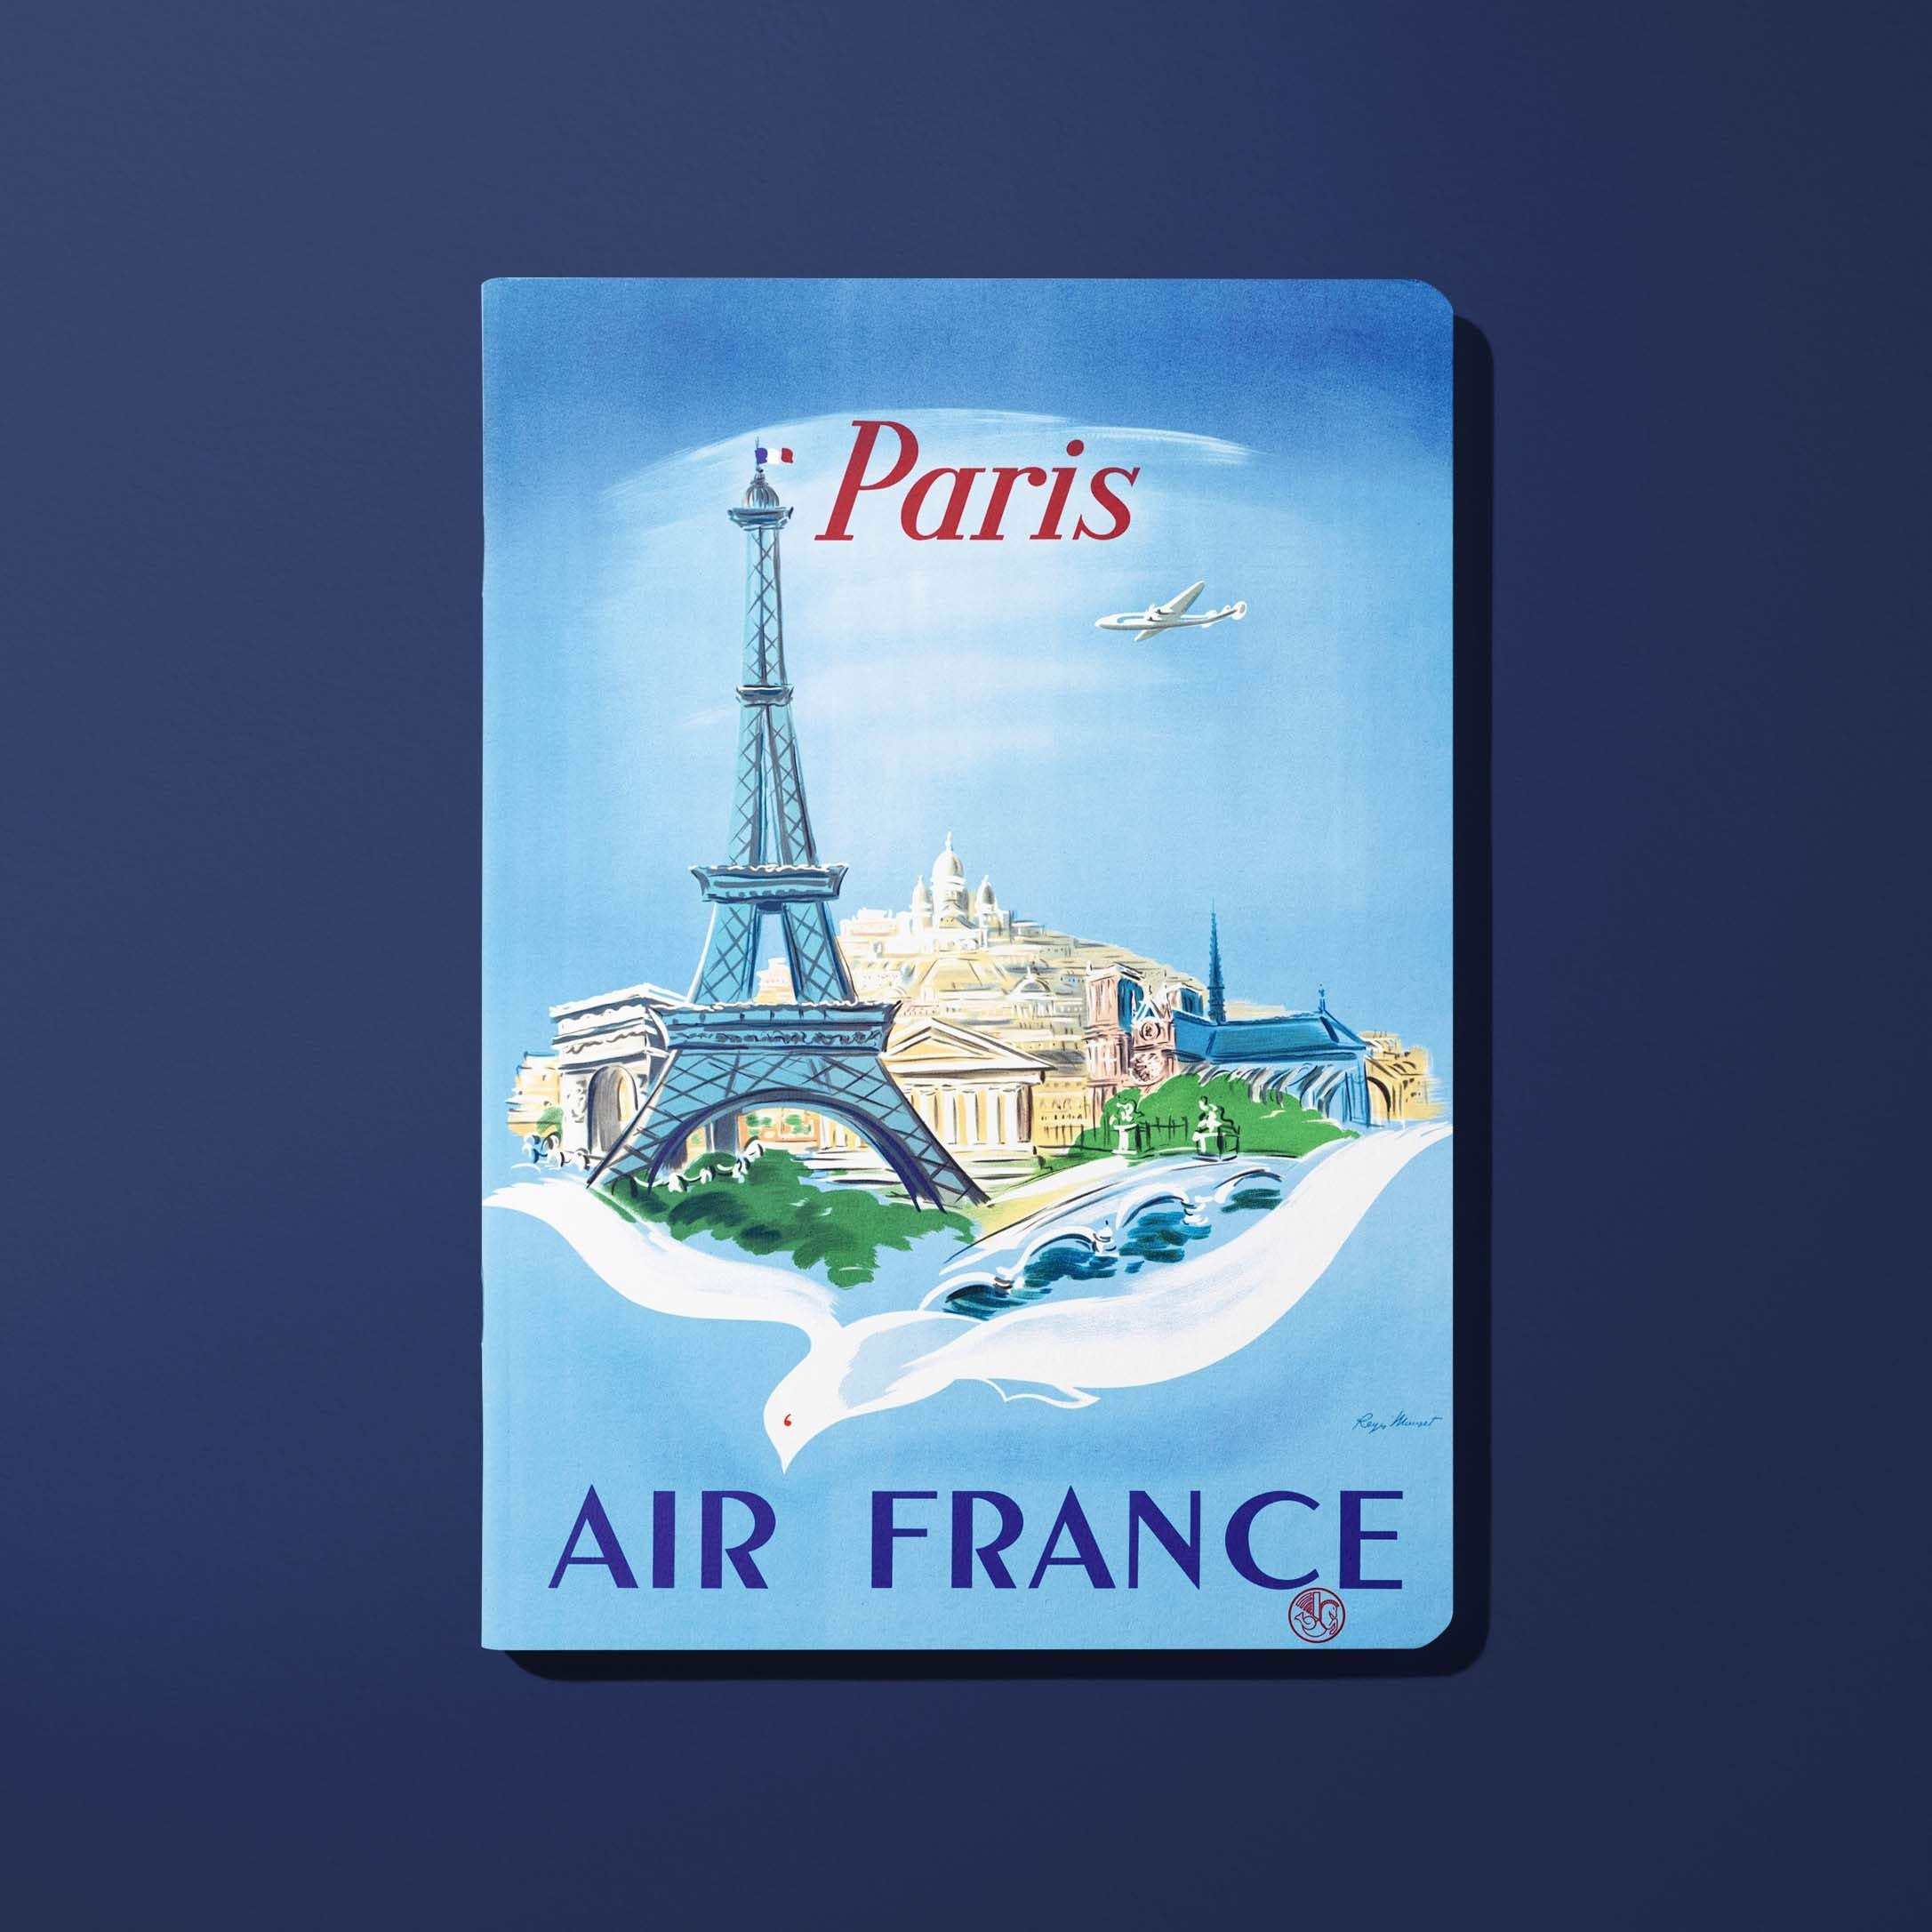 Carnet Air France Legend Paris, Tour Eiffel et colombe